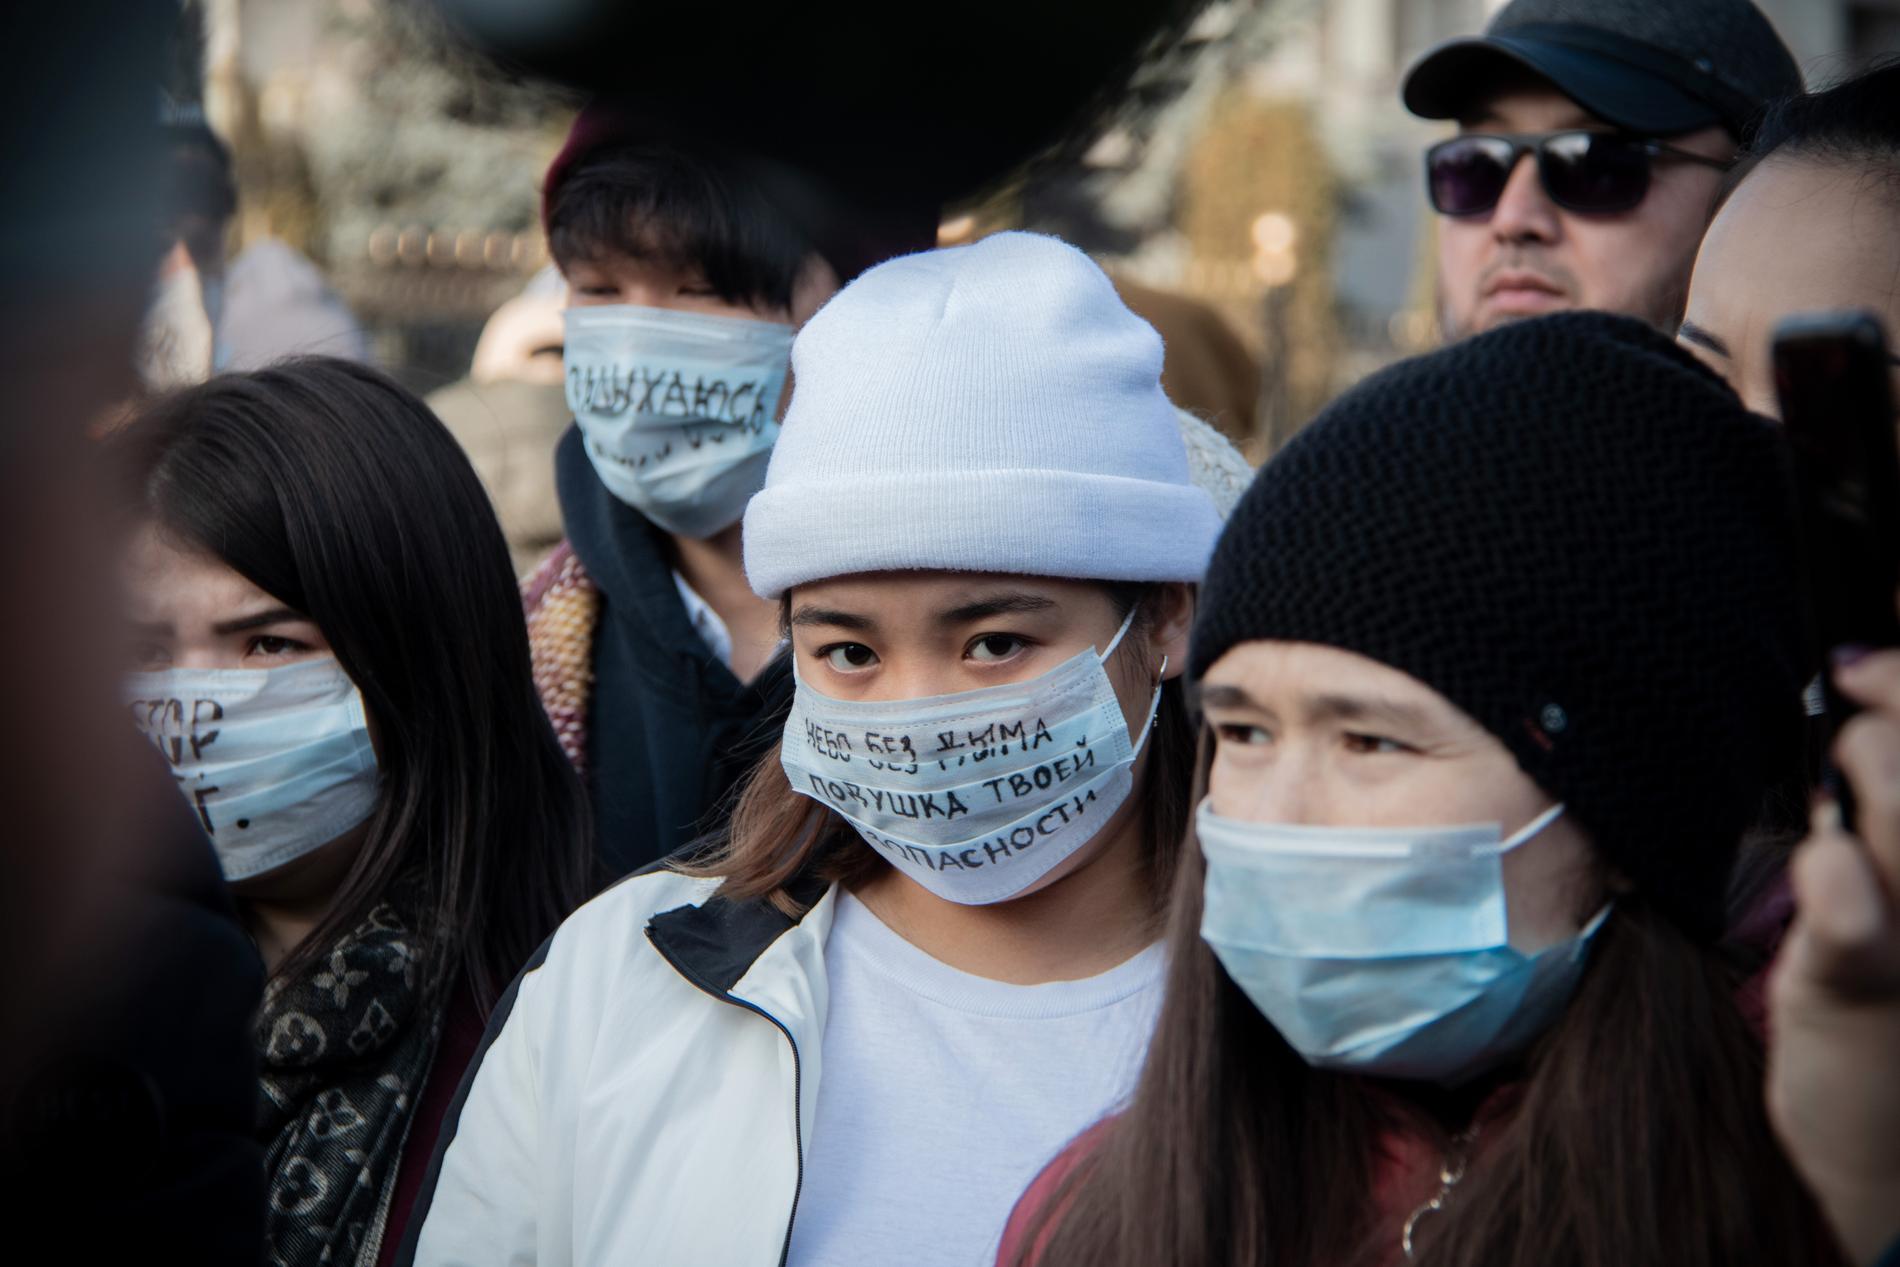 Människor tar till gatorna för att protestera mot den dåliga luften i Kirgizistans huvudstad Bisjkek.